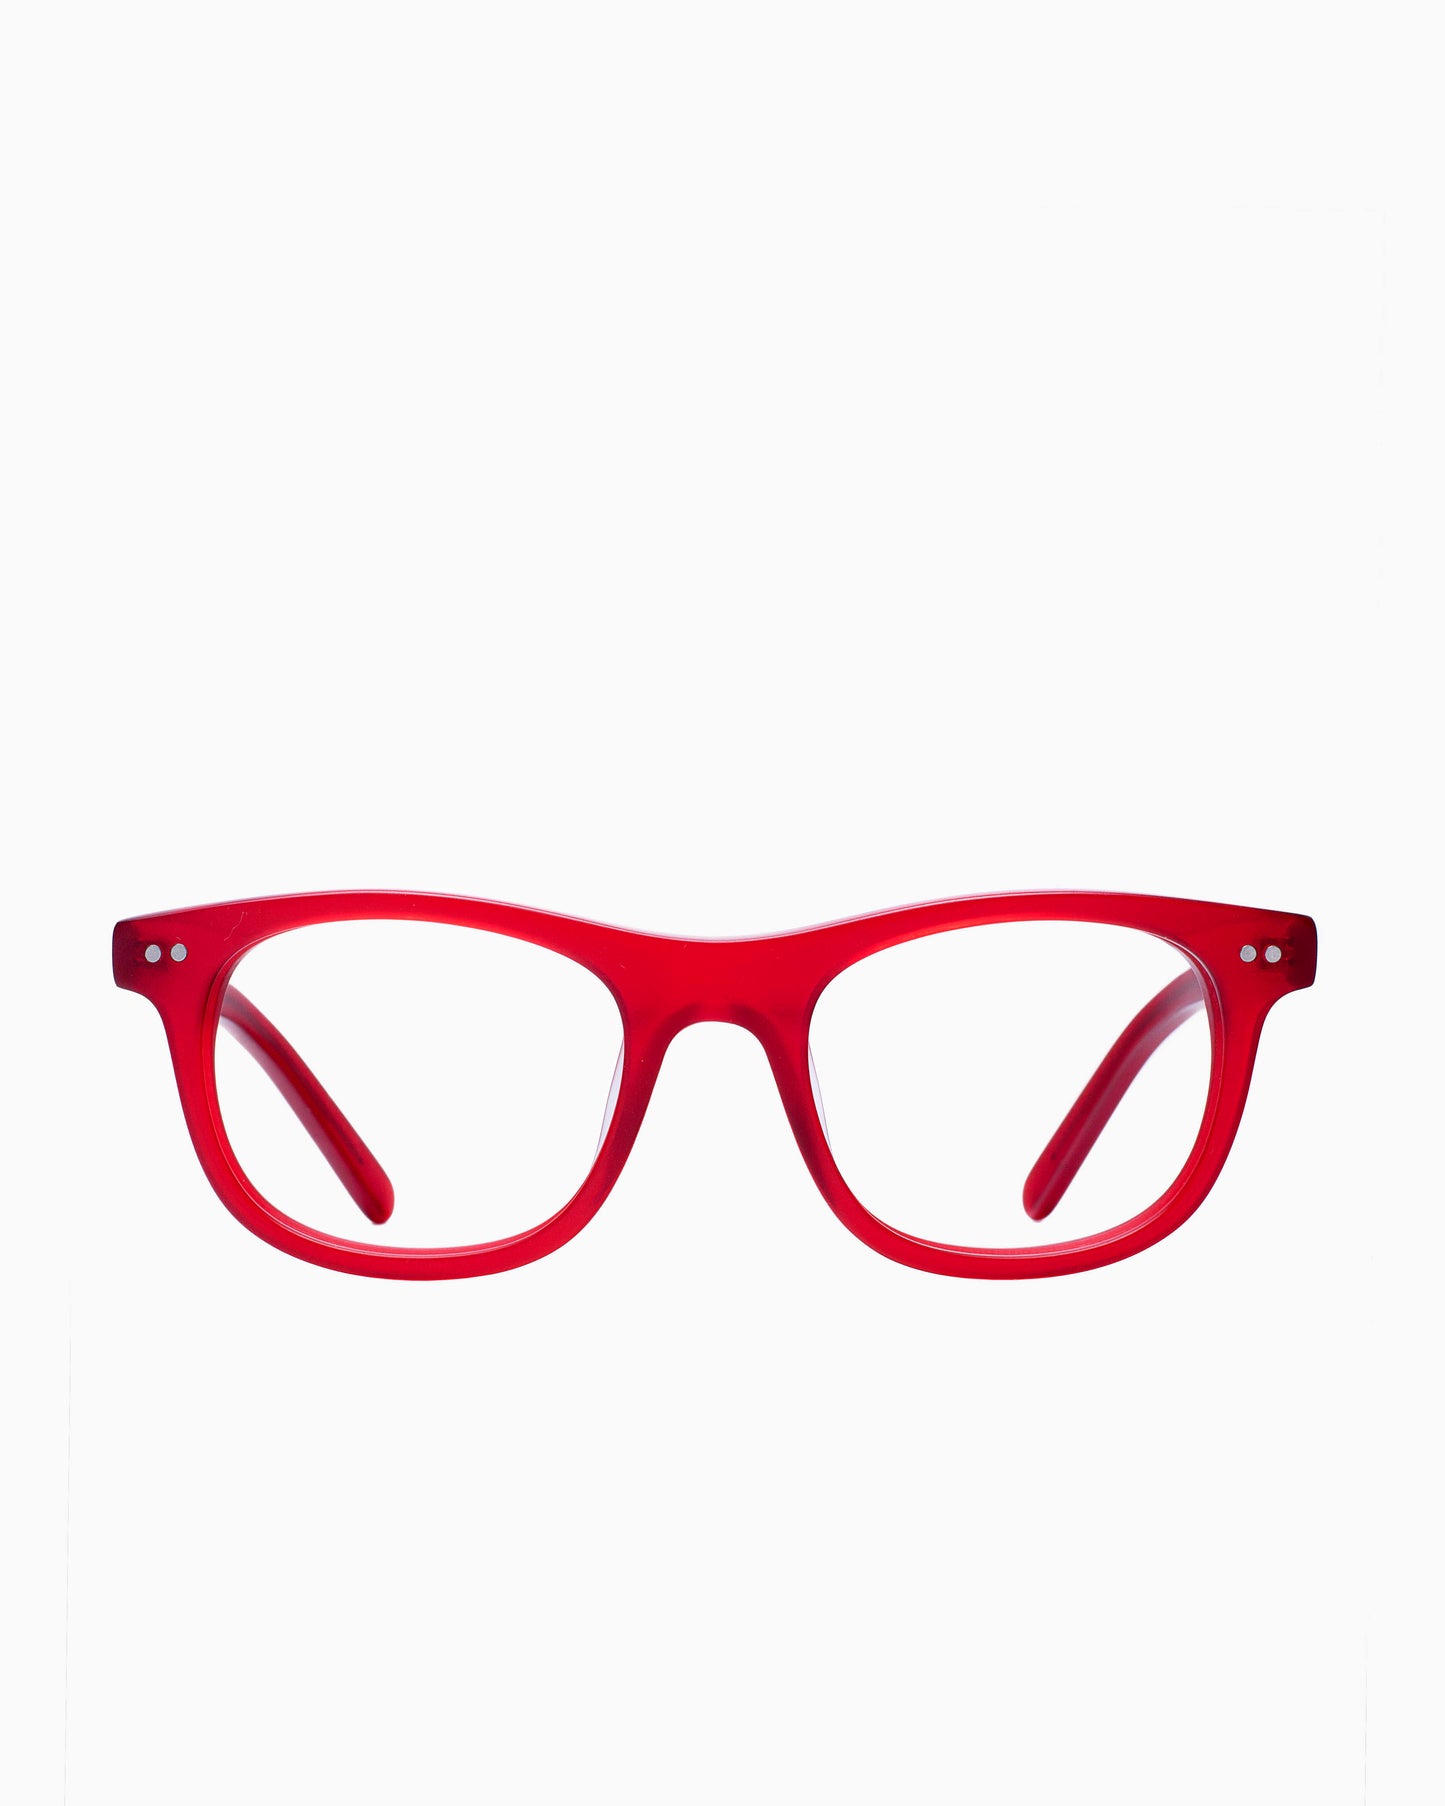 BBig - 219 - 402 | Bar à lunettes